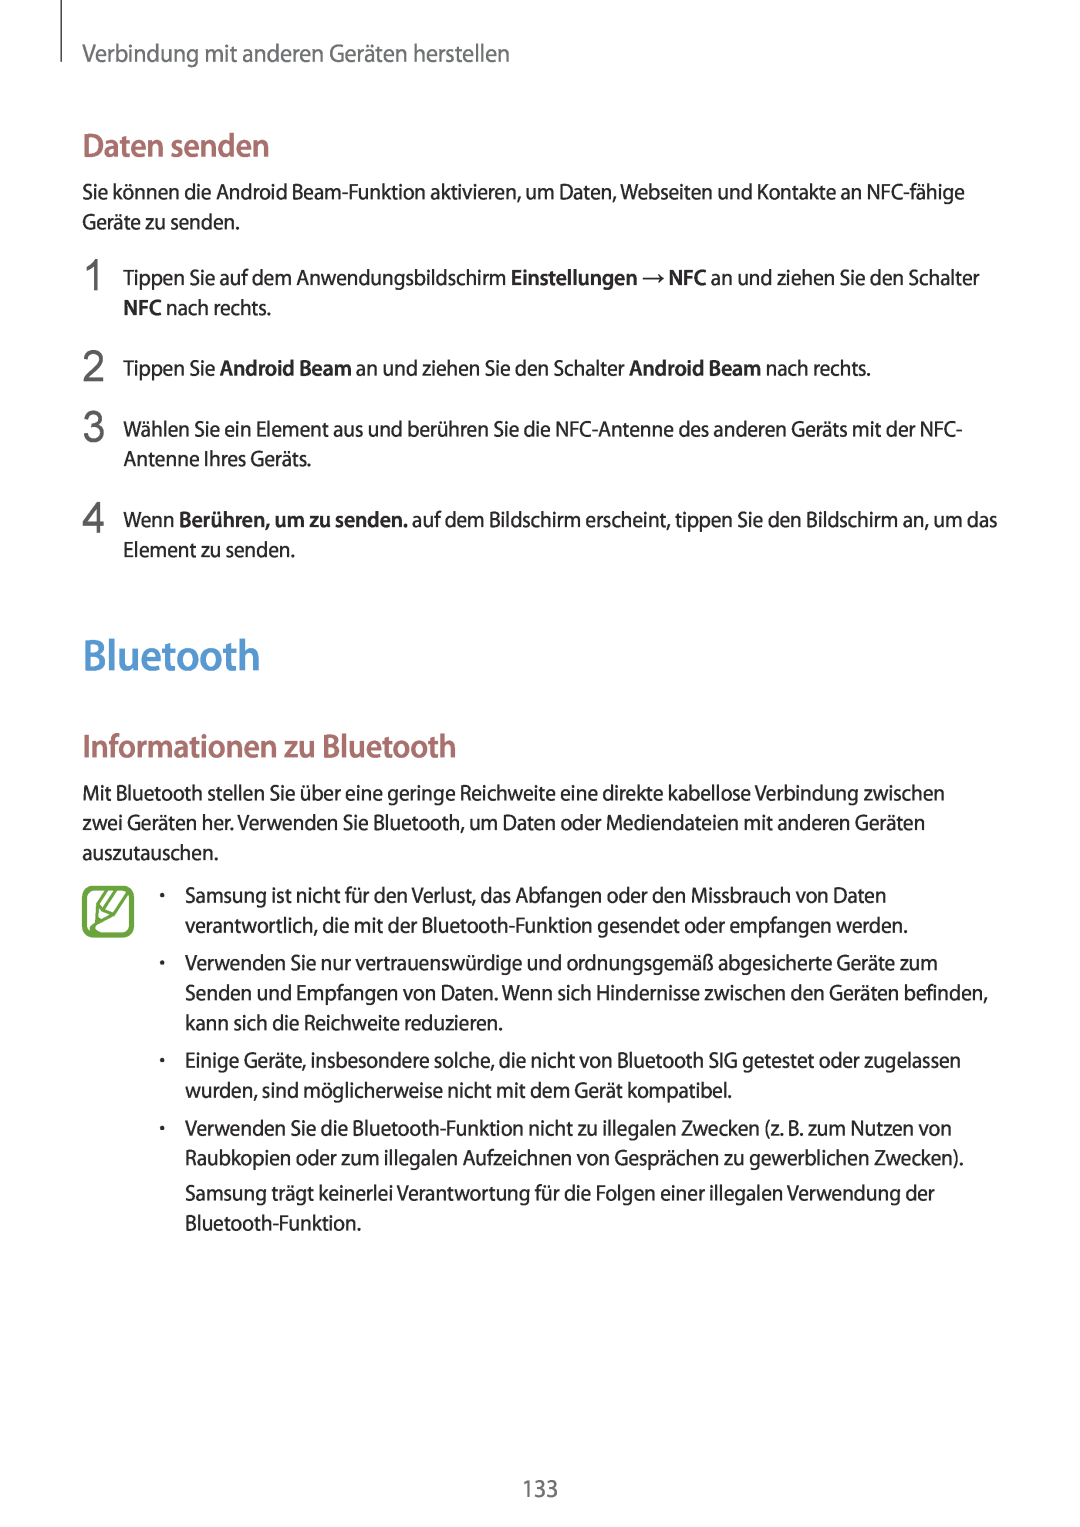 Samsung SM-G901FZBABAL manual Daten senden, Informationen zu Bluetooth, Verbindung mit anderen Geräten herstellen 